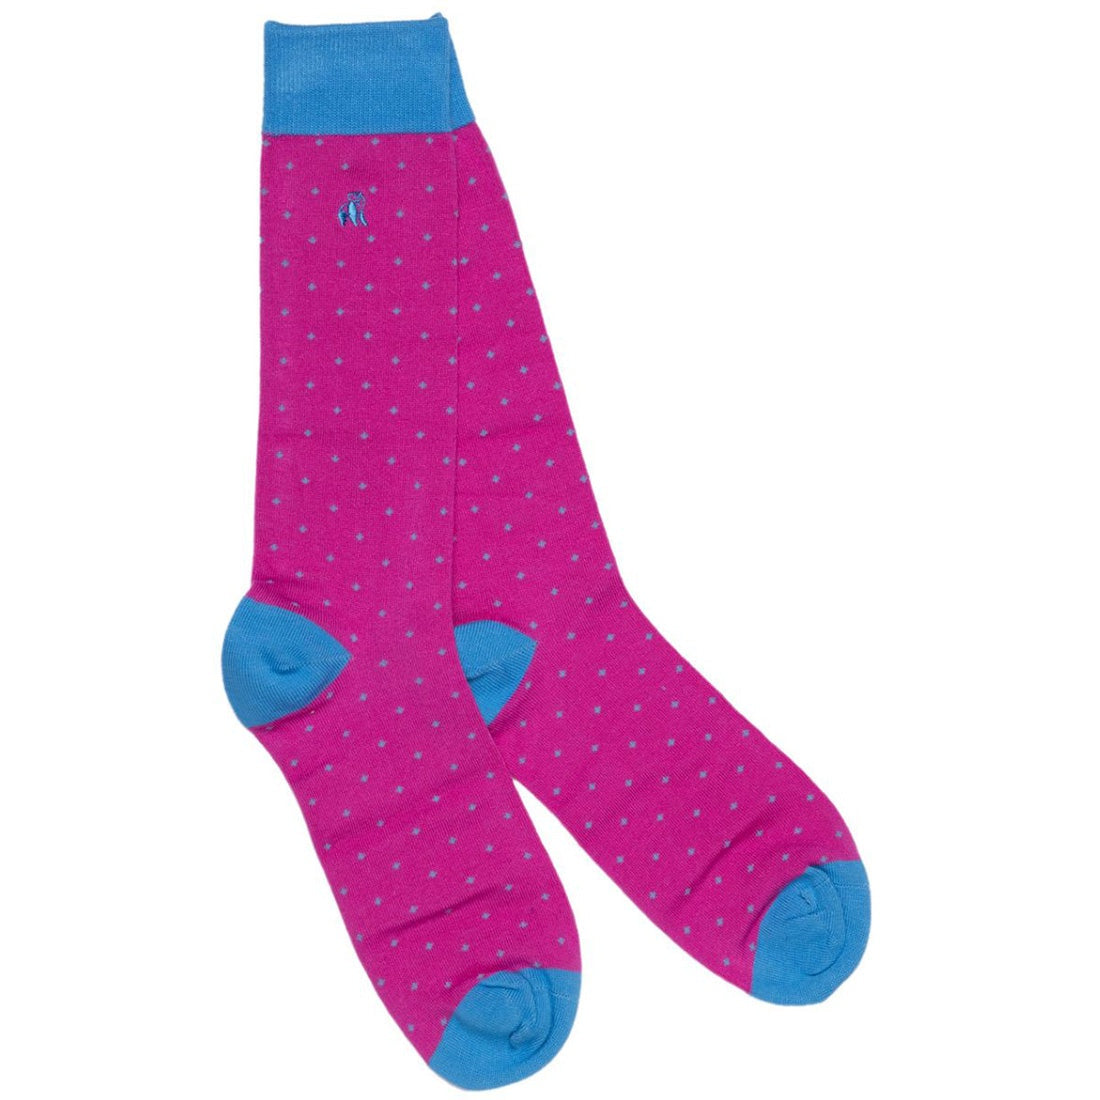 Swole Panda Socks - Pink Spotted